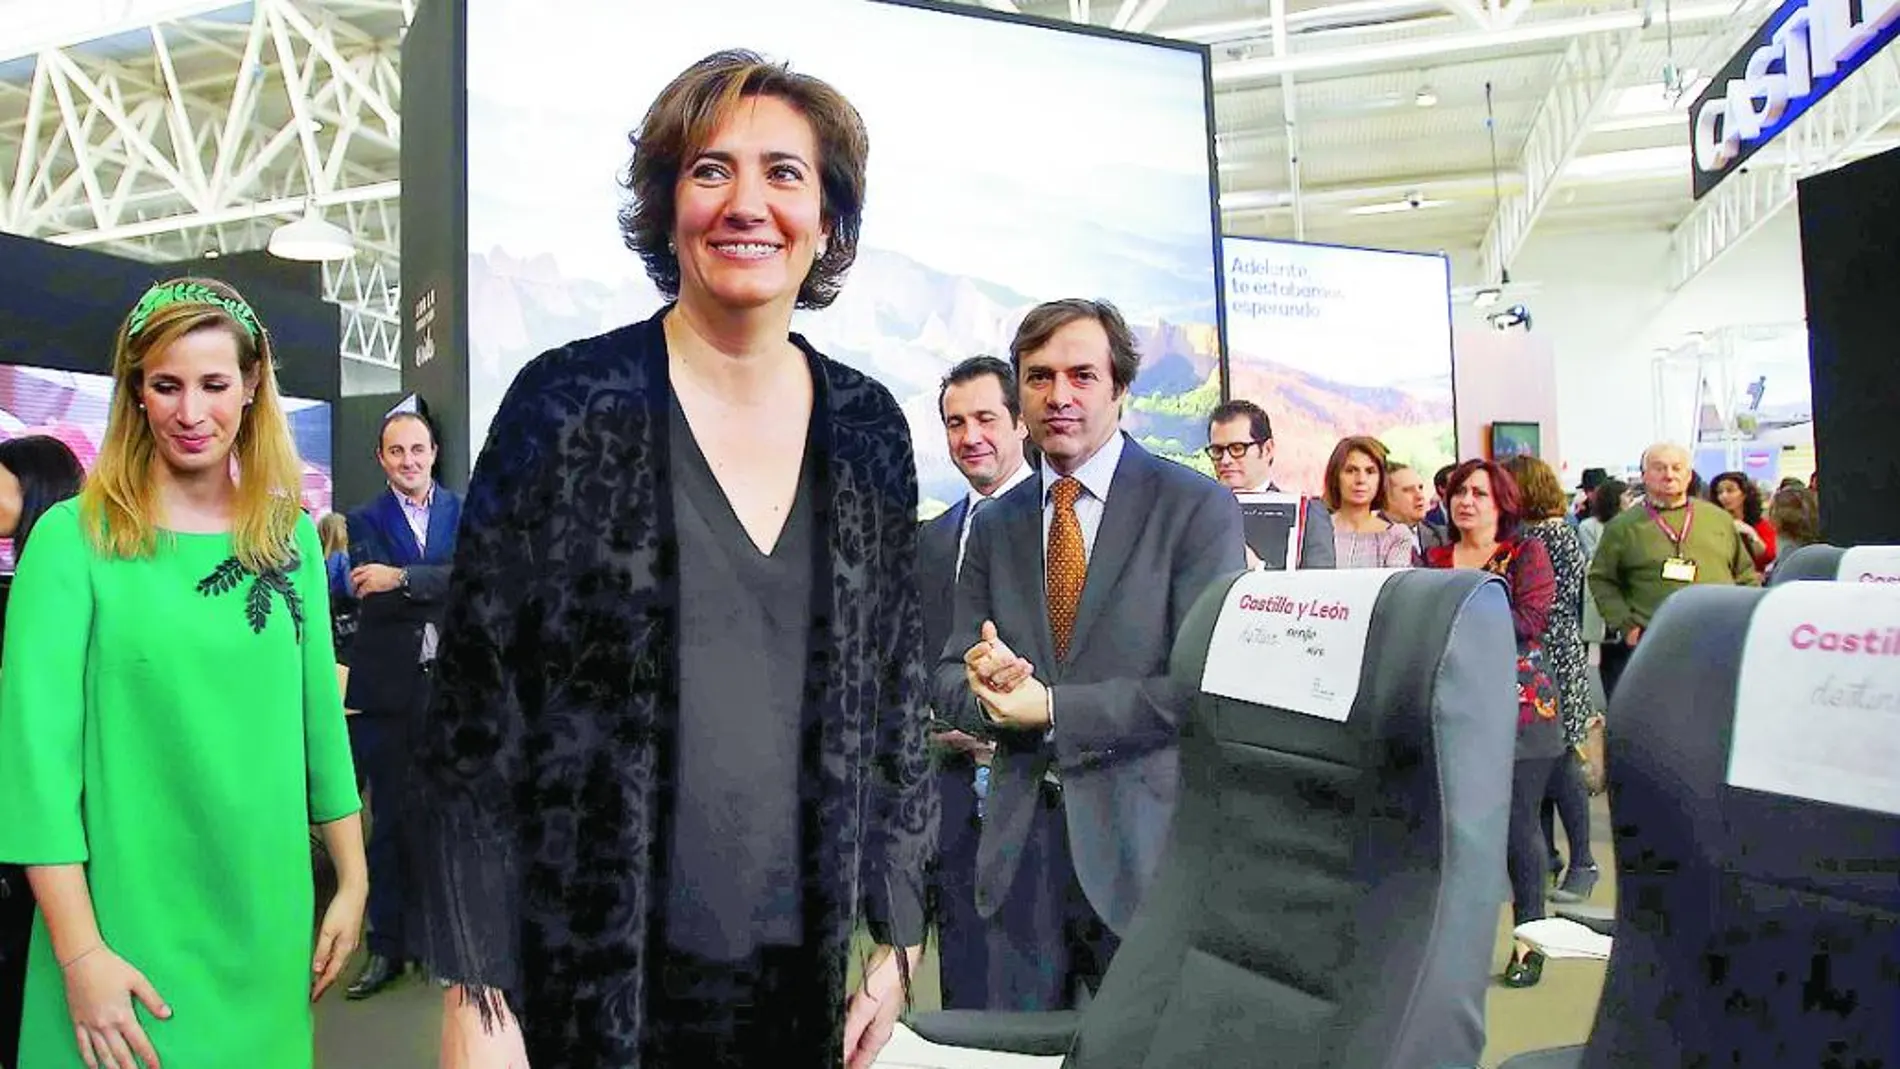 La consejera de Cultura y Turismo, María Josefa García Cirac, inaugura la Feria Intur 2015